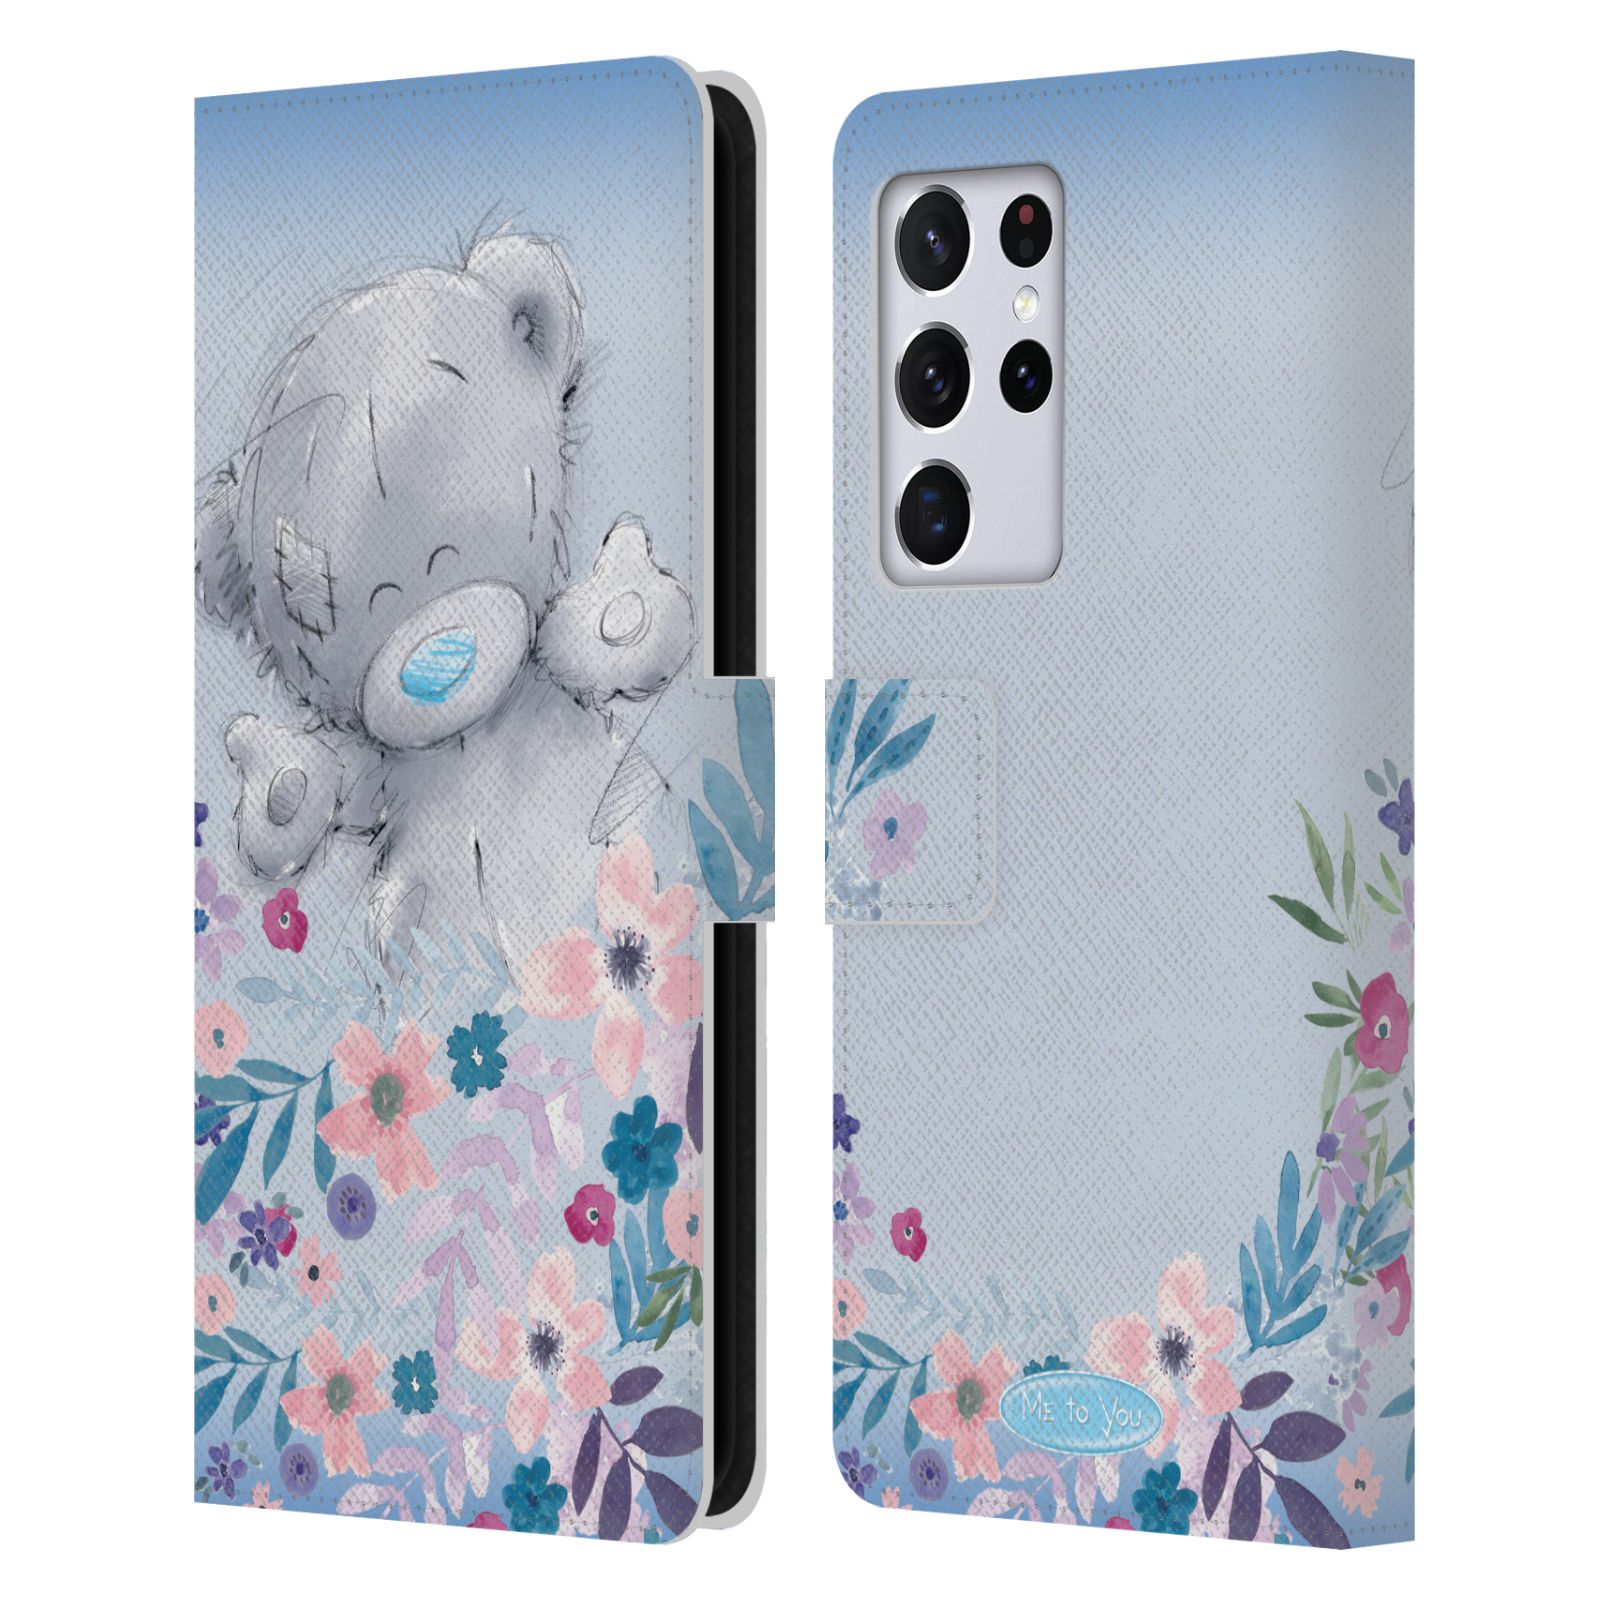 Pouzdro na mobil Samsung Galaxy S21 ULTRA 5G  - HEAD CASE - Me To You - Medvídek mezi květinami